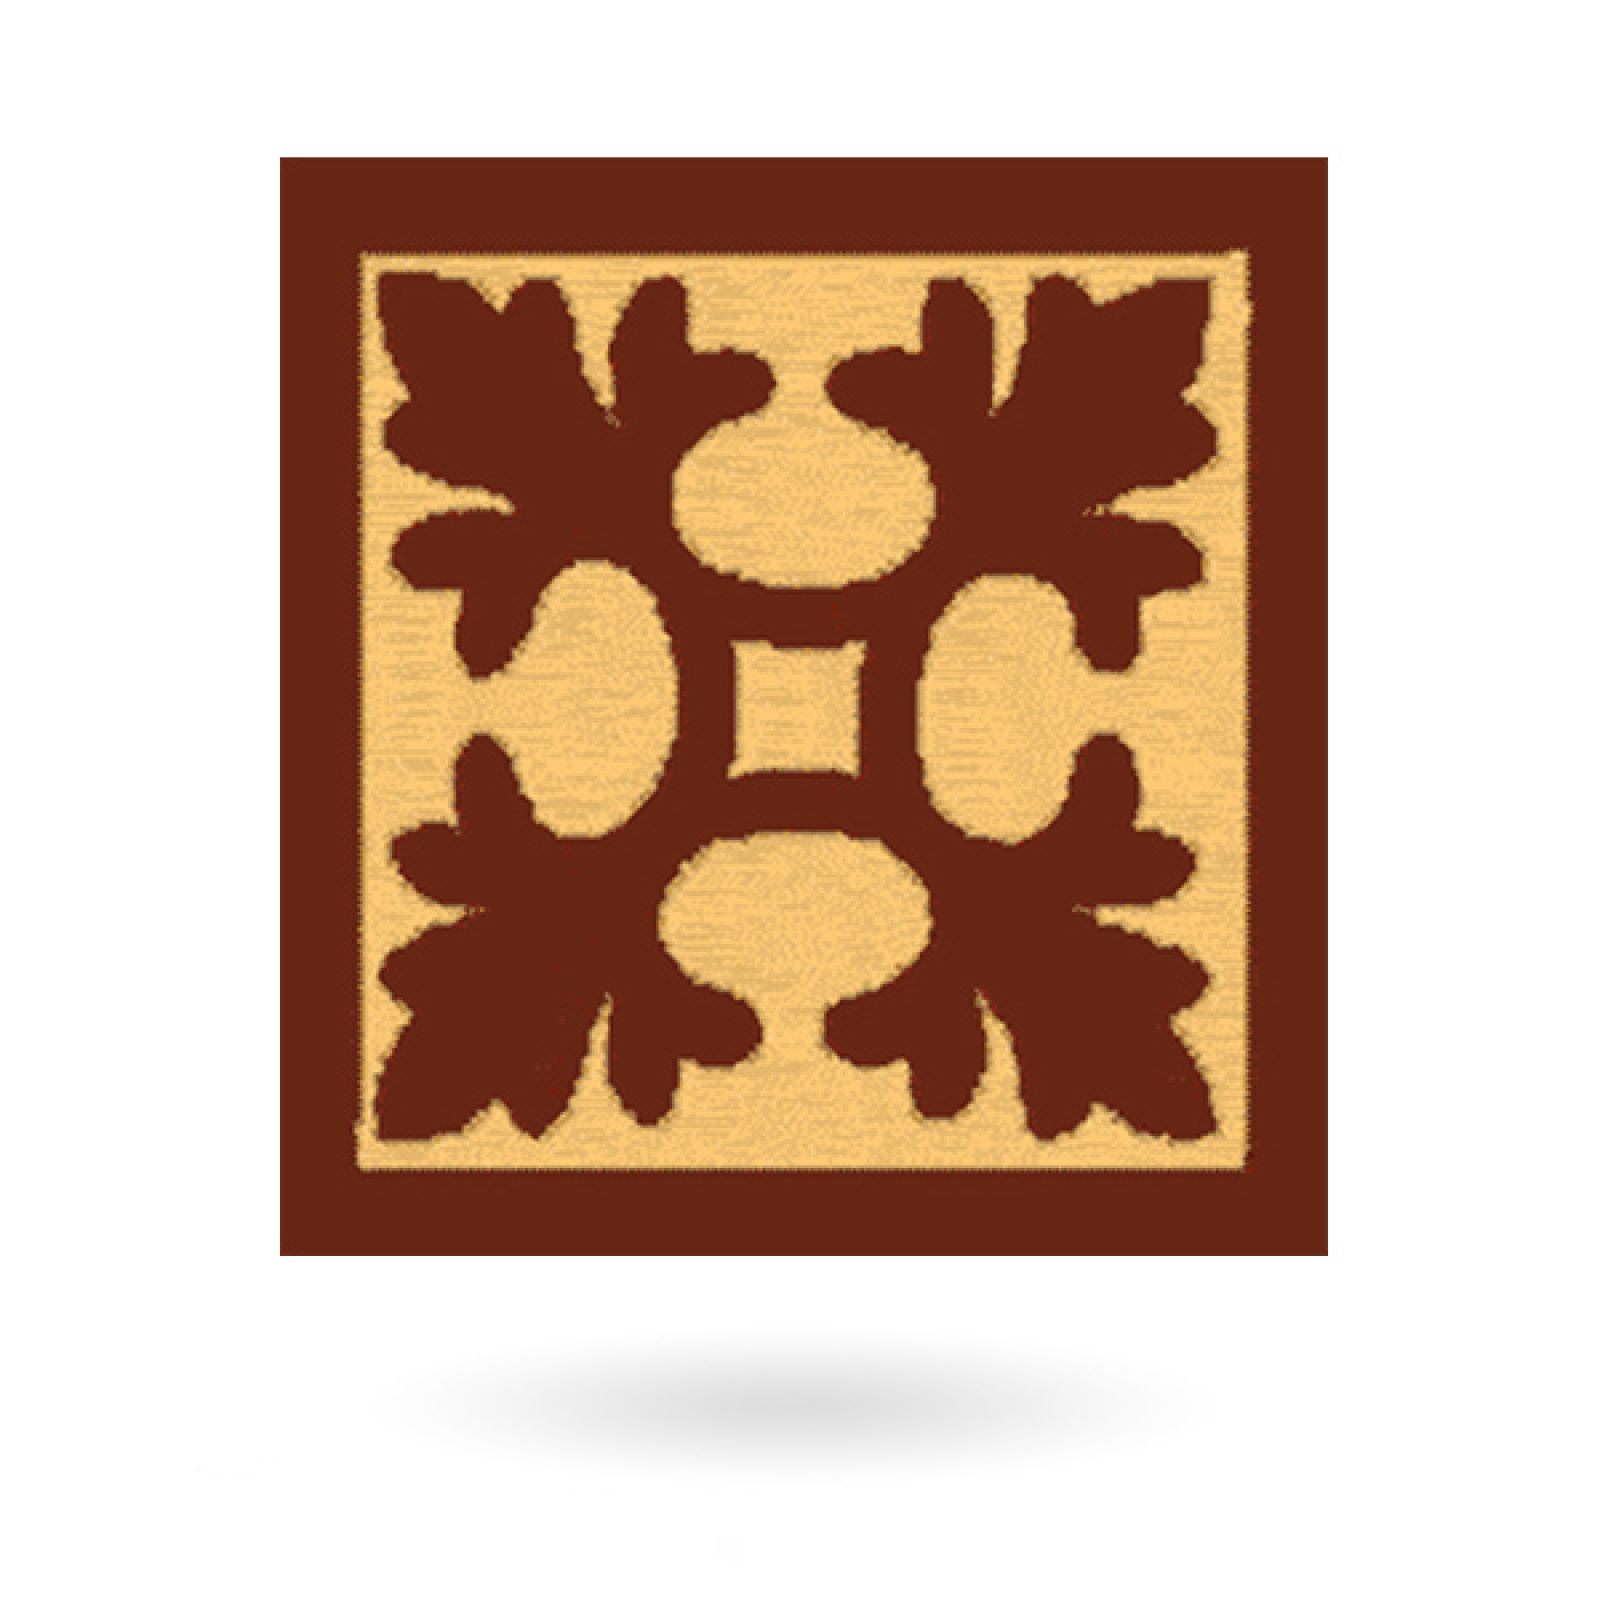 Encaustic 3” square tile - design 3